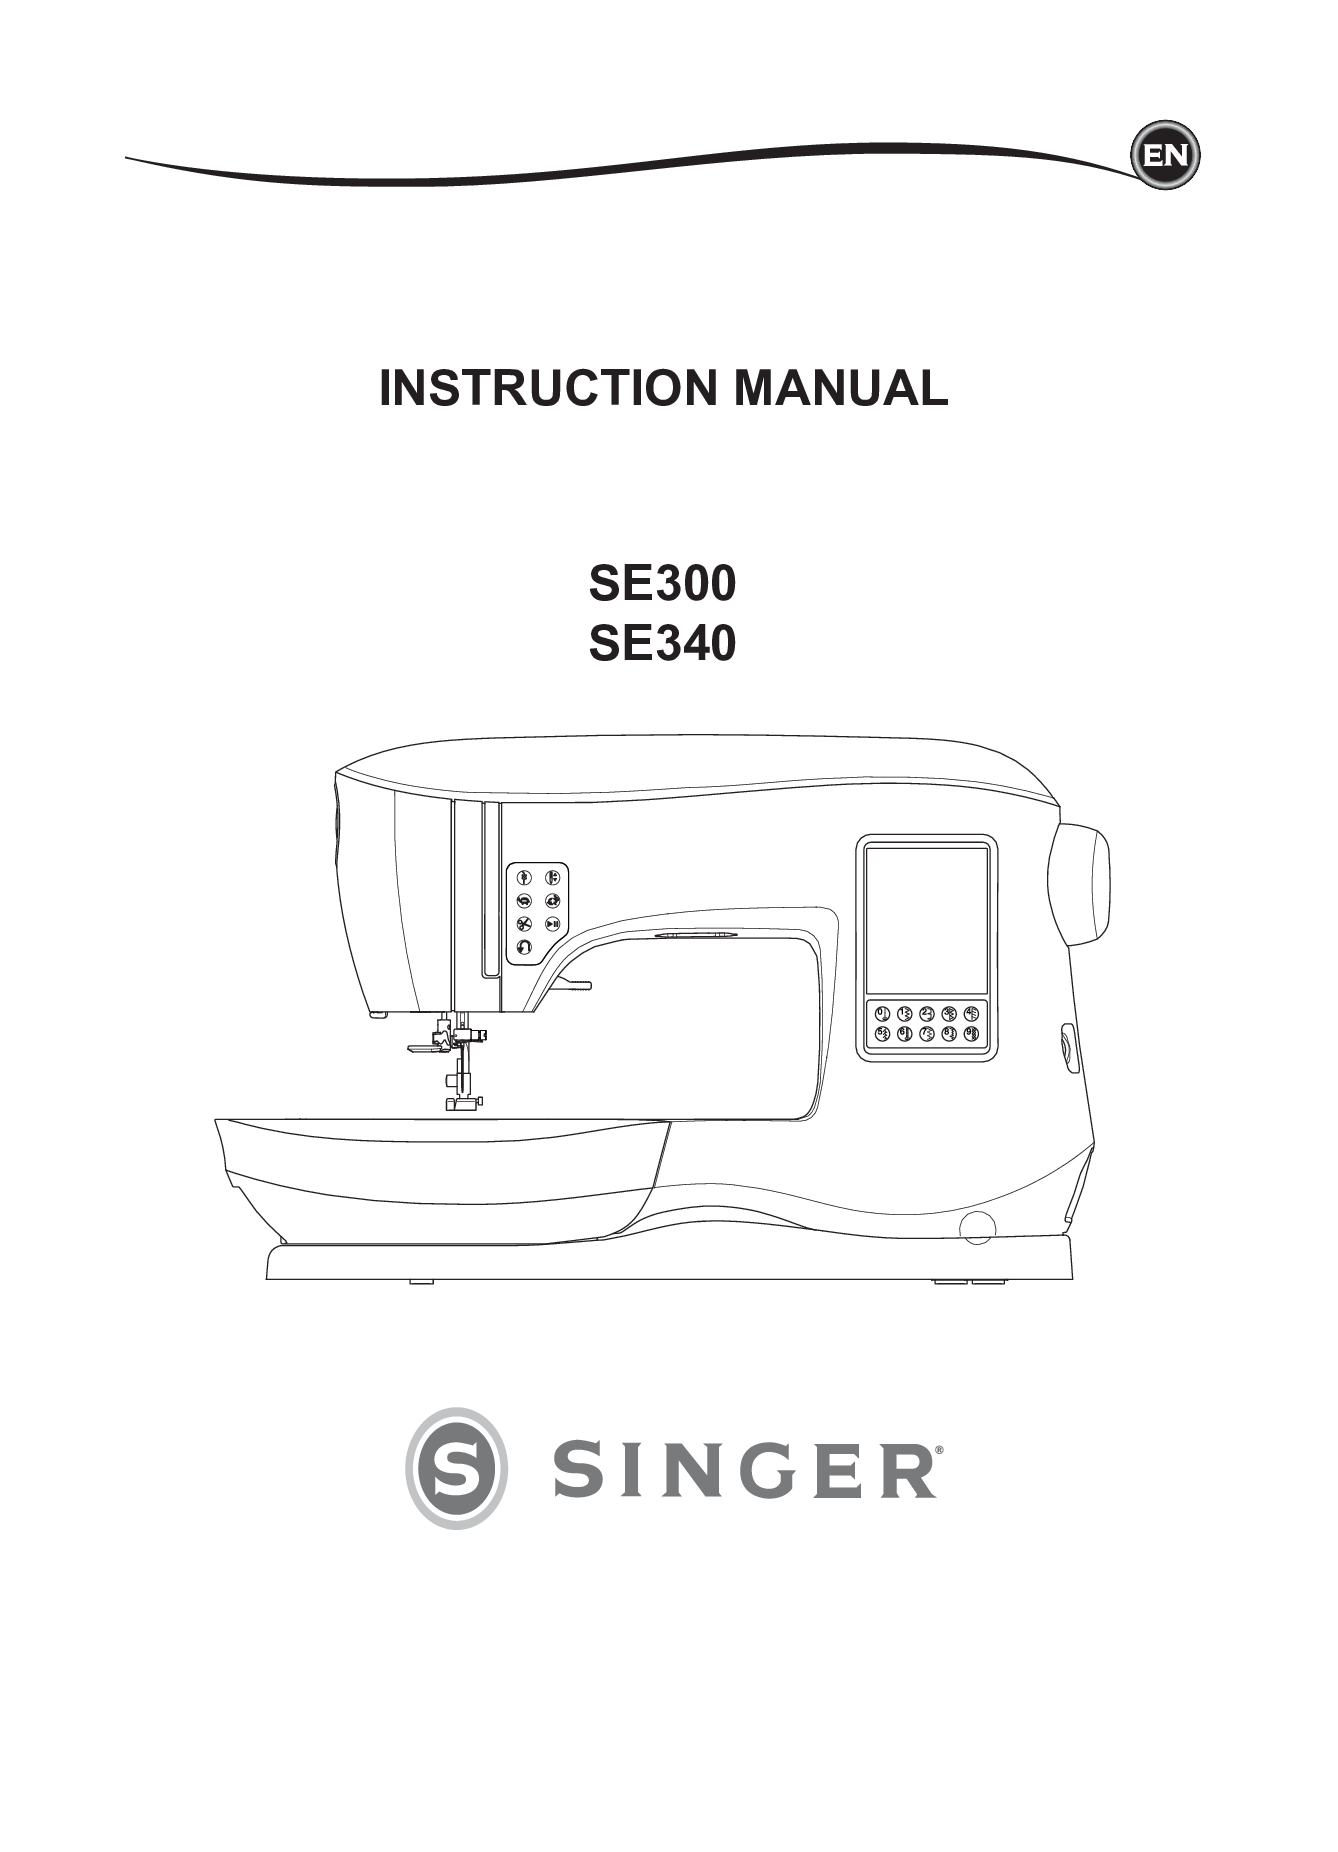 Singer SE300, SE340 Instruction Manual